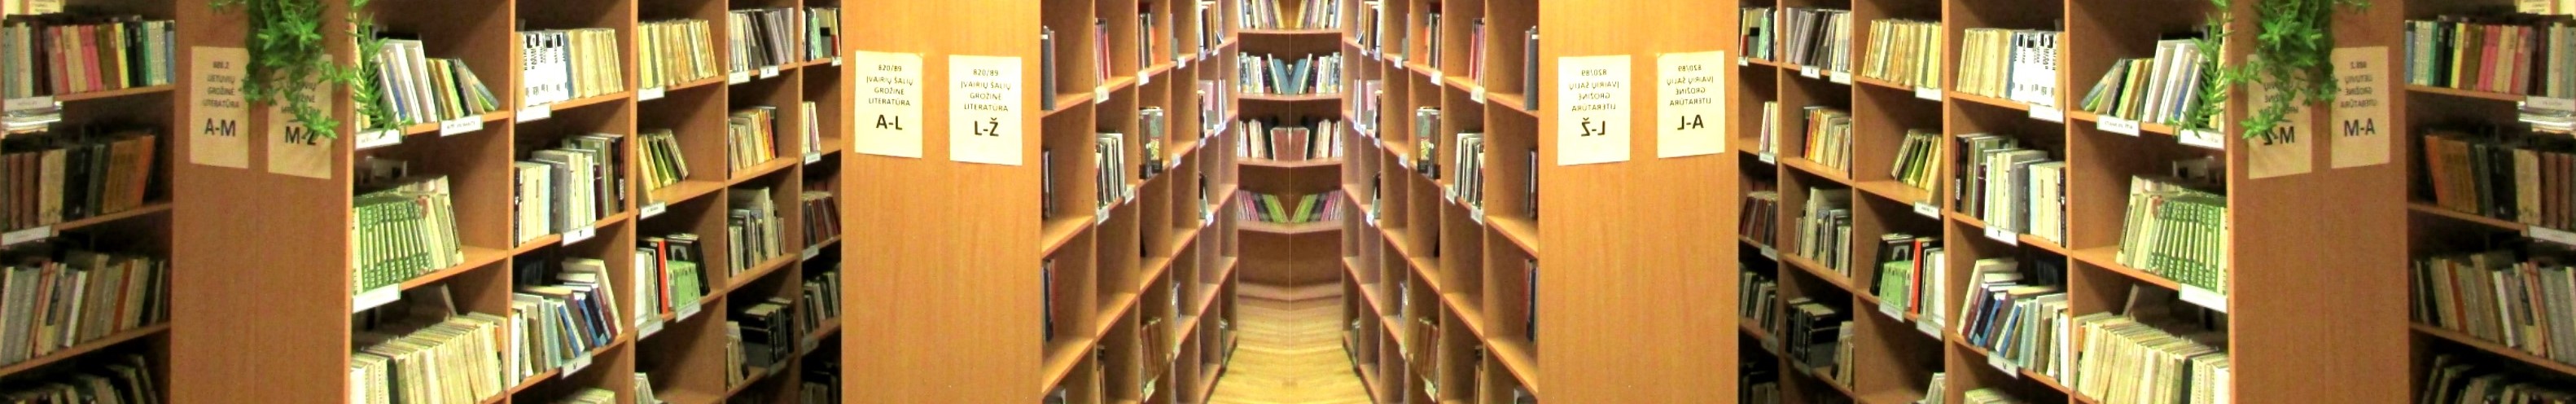 bibliotekos prekybos sistema)